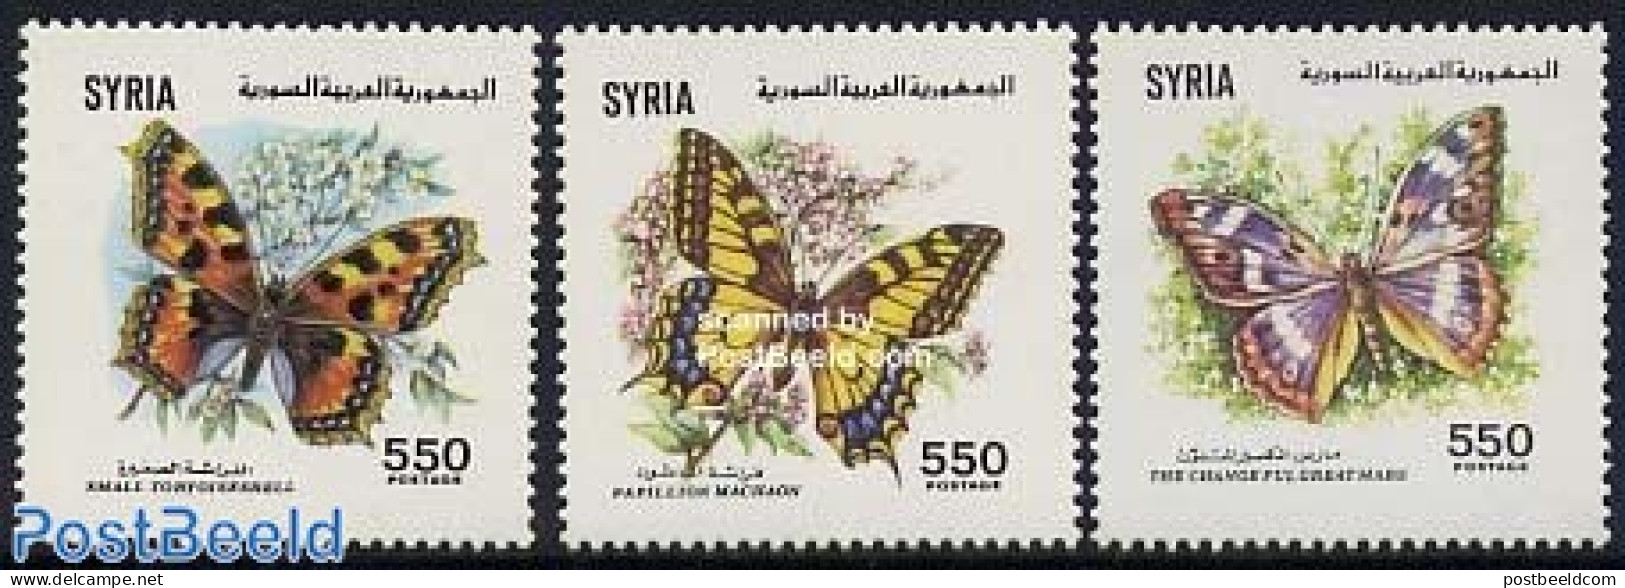 Syria 1991 Butterflies 3v, Mint NH, Nature - Butterflies - Siria